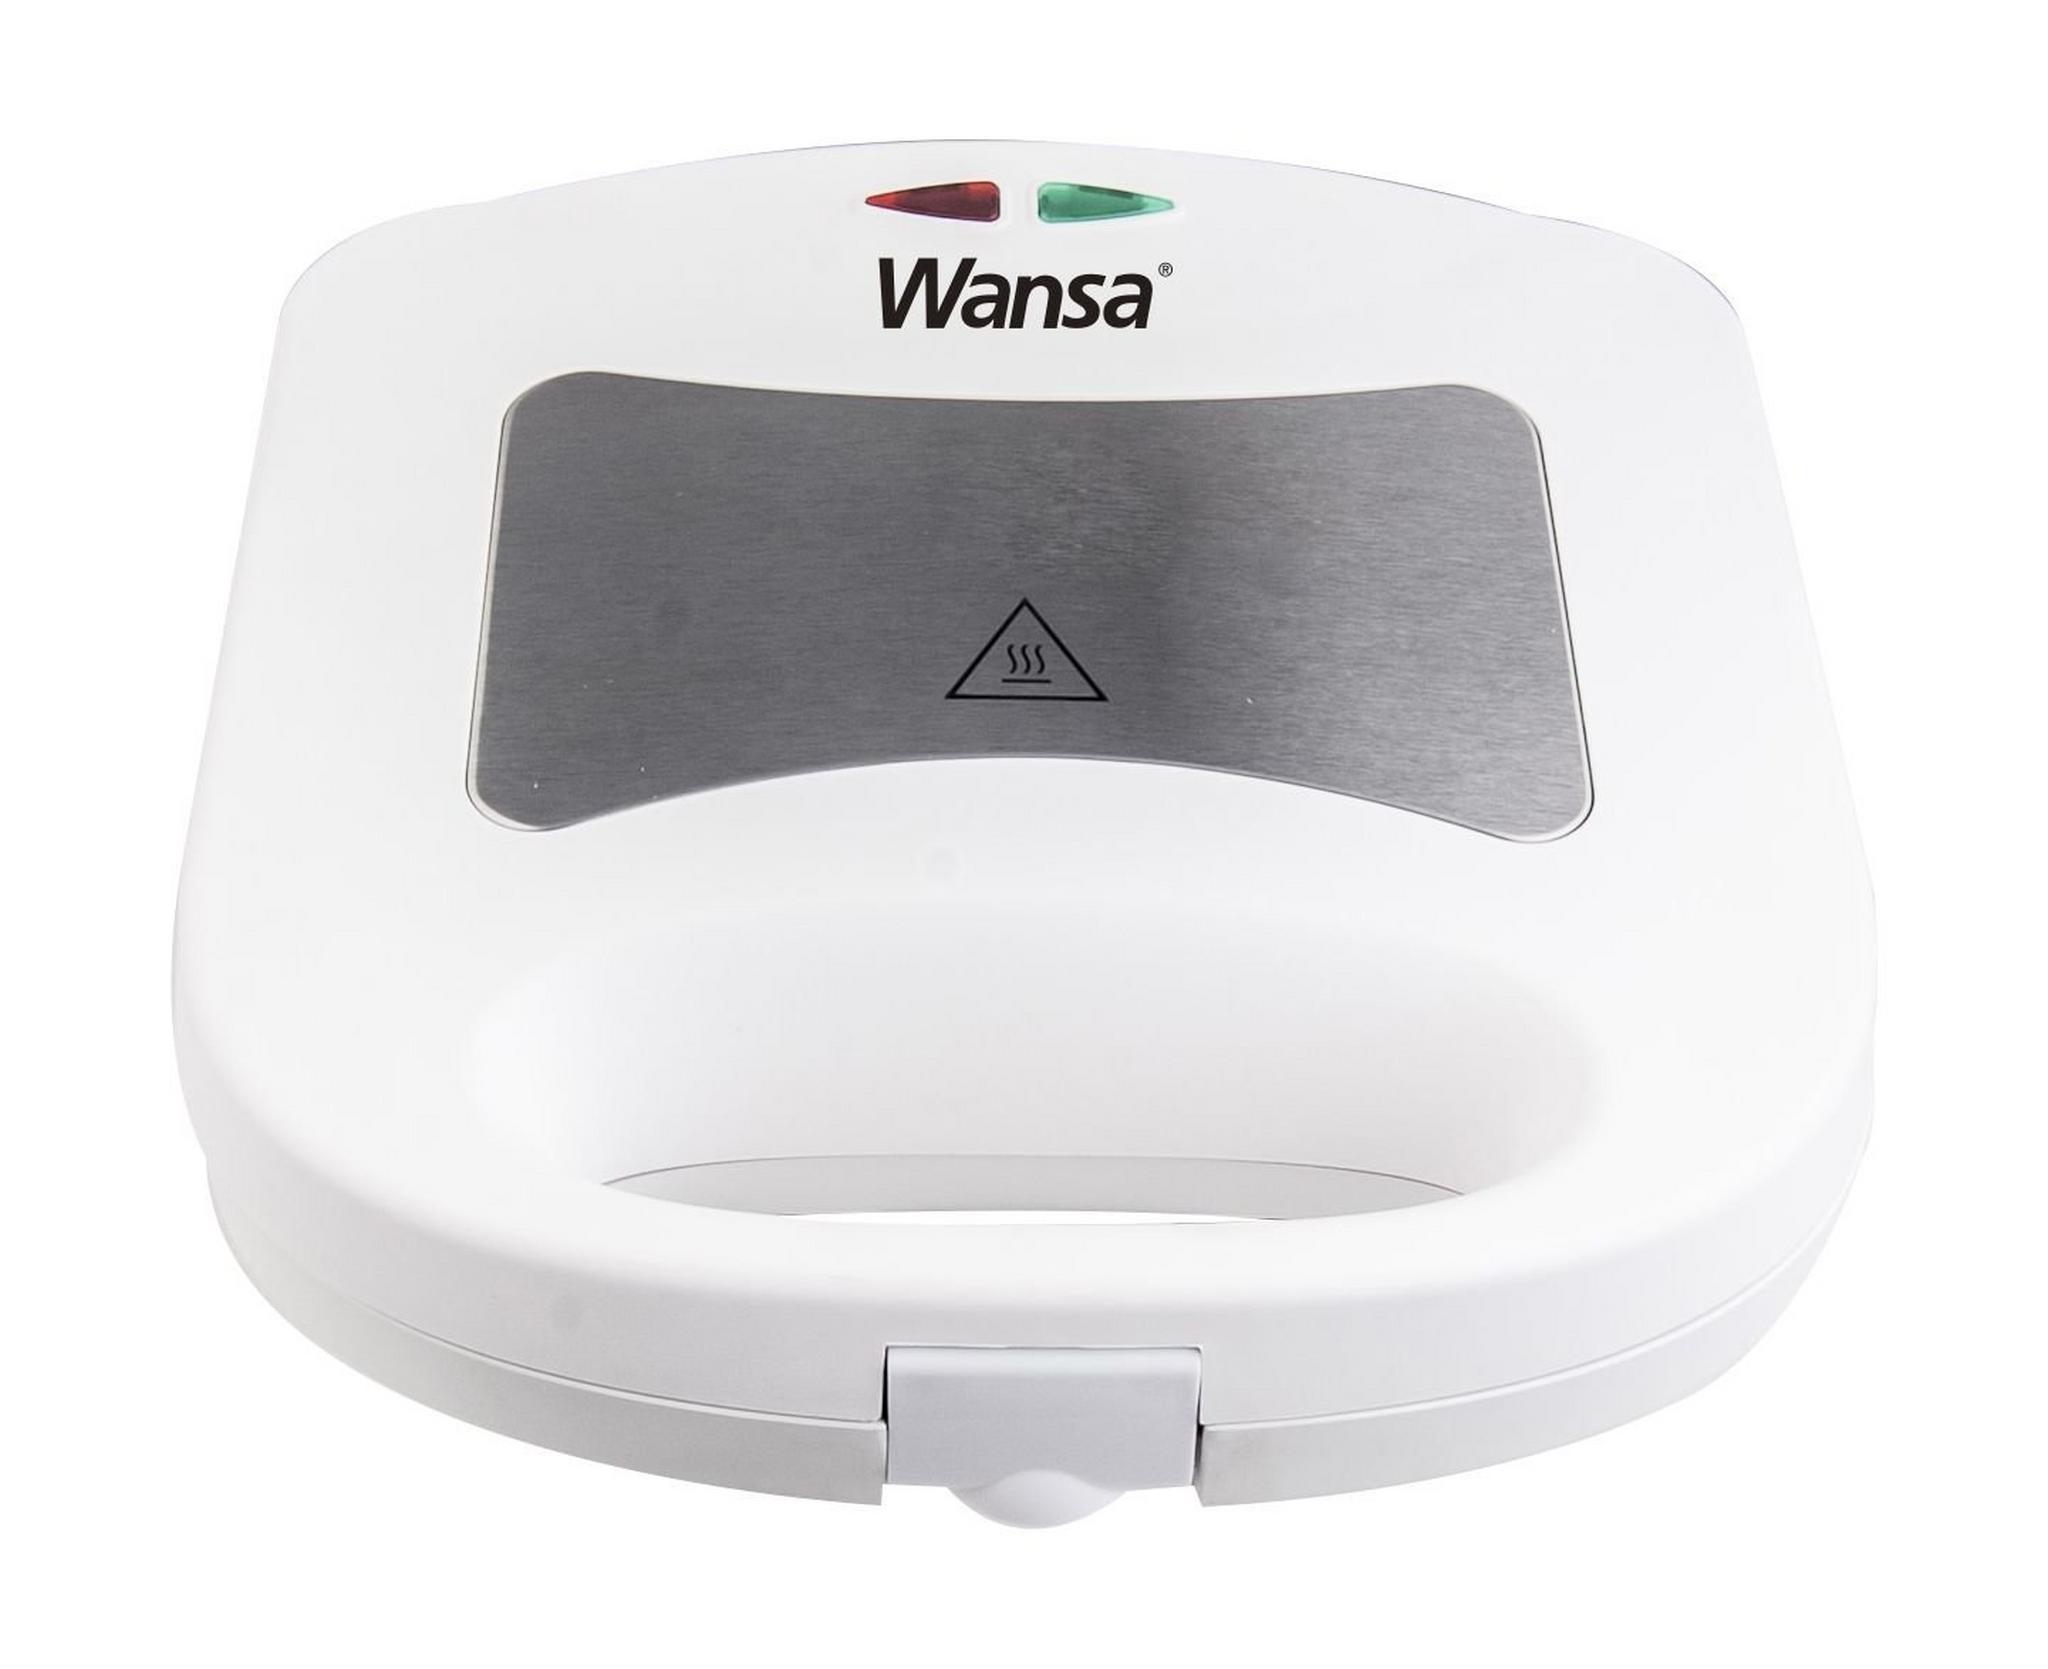 Wansa 3 in 1 Sandwich Maker 700 Watts (TS-73030